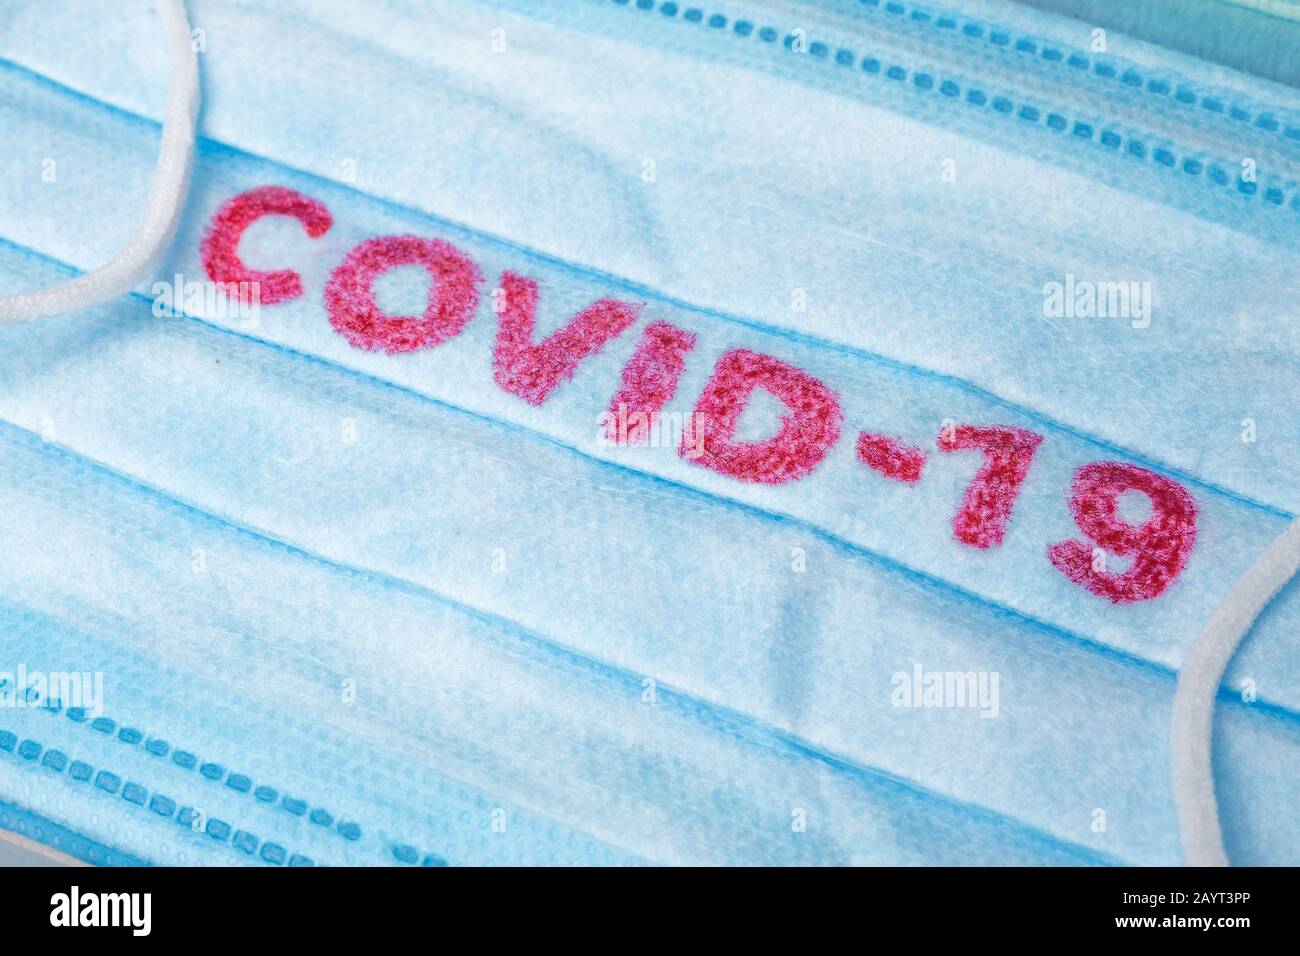 Covid-19 - Il Romanzo di Wuhan Coronavirus polmonite ottiene il nome ufficiale DA CHI: COVID-19. Medicazione monouso sul viso. Contesto sanitario. Maschera facciale monouso per uso medico blu con stampa covid-19 Foto Stock